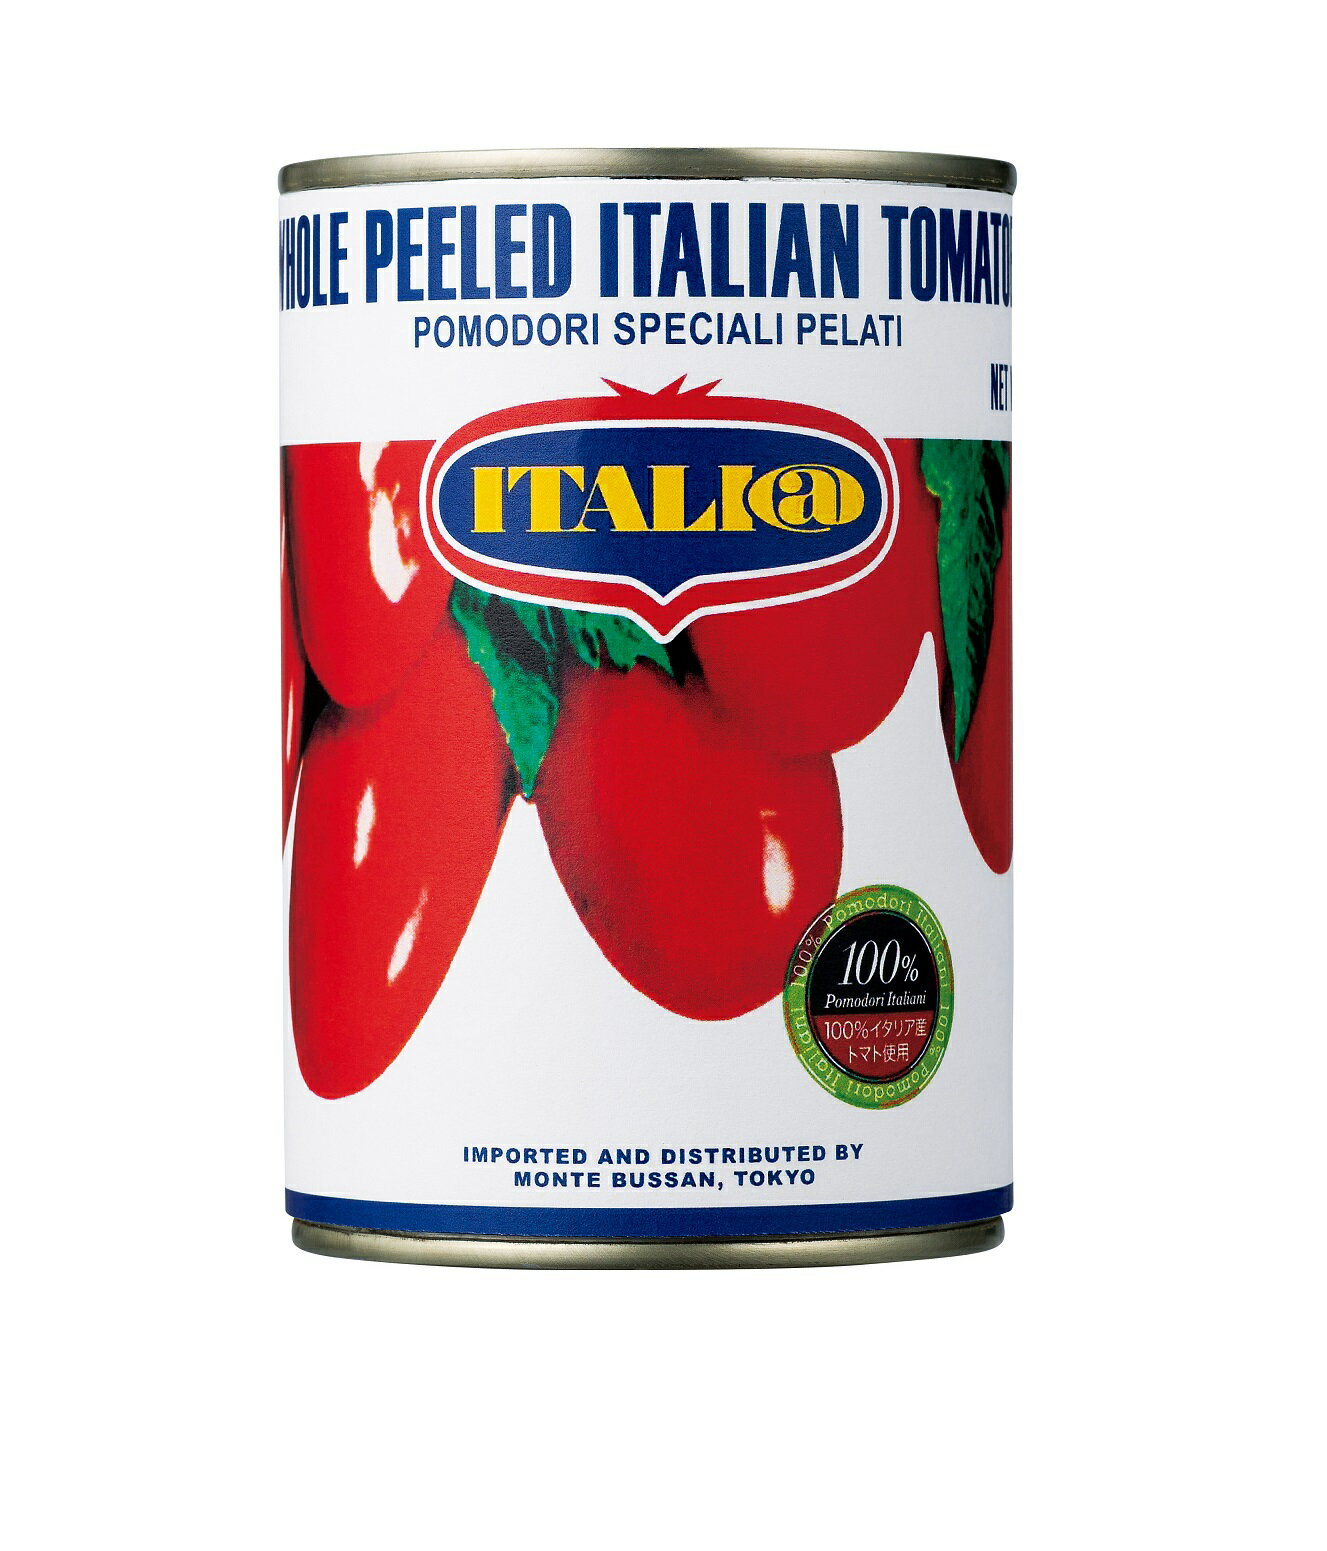 "ITALI@" Pomodori Pelati Interi ソース用に最適と言われる、肉厚で酸味の少ない縦長タイプの完熟トマトを湯むきし、裏ごししたトマトジュースと一緒に缶詰にしました。 【保存方法】 開缶時に切り口で手を切らないようご注意ください。 ※開缶後はガラス等の容器に移し替えて冷蔵庫で保存しお早めにご使用ください。 ※缶のまま直火にかけないでください。 &nbsp; ＜ITALI@＞ 1977年の輸入開始当初から、現地提携工場とともに「どこよりもよいトマトを一定の品質で」をモットーに造り続けてきました。原料の調達から缶詰工程まで、すべてモンテ物産が徹底管理し、品質のよさと安定性で常にトップブランドとして市場をリードしています。ジュースが濃いため調理時間を短縮でき、歩留まりが高いことが特徴です。 その美味しさは、本格派レストランから、家族が集う食卓まで。「イタリアット」は、"郷土色豊かなイタリアの本物の味わい、プロフェッショナル品質を、気軽にご家庭でもお楽しみいただきたい"。そんな想いから開発されたモンテ物産のオリジナルブランドです。 イタリアならではの美味しい食体験を、日本の食卓へ。モンテ物産が自信を持ってお届けします。 ※モンテベッロブランドは、順次イタリアットに変更となります。 &nbsp; ブランド イタリアット ITALI@ 名称 トマト・ピューレーづけ 開封前温度帯 常温 内容量 400g 原材料 トマト、トマトピューレー／クエン酸 原産国 イタリア &nbsp; 〜ご利用いただけるシーン〜 季節のご挨拶 御正月 お正月 御年賀 お年賀 御年始 母の日 父の日 初盆 お盆 御中元 お中元 お彼岸 残暑御見舞 残暑見舞い 敬老の日 寒中お見舞 クリスマス クリスマスプレゼント お歳暮 御歳暮 春夏秋冬 日常の贈り物 御見舞 退院祝い 全快祝い 快気祝い 快気内祝い 御挨拶 ごあいさつ 引越しご挨拶 引っ越し お宮参り御祝 志 進物 長寿のお祝い 61歳 還暦（かんれき） 還暦御祝い 還暦祝 祝還暦 華甲（かこう） 祝事 合格祝い 進学内祝い 成人式 御成人御祝 卒業記念品 卒業祝い 御卒業御祝 入学祝い 入学内祝い 小学校 中学校 高校 大学 就職祝い 社会人 幼稚園 入園内祝い 御入園御祝 お祝い 御祝い 内祝い 金婚式御祝 銀婚式御祝 御結婚お祝い ご結婚御祝い 御結婚御祝 結婚祝い 結婚内祝い 結婚式 引き出物 引出物 引き菓子 御出産御祝 ご出産御祝い 出産御祝 出産祝い 出産内祝い 御新築祝 新築御祝 新築内祝い 祝御新築 祝御誕生日 バースデー バースディ バースディー 七五三御祝 753 初節句御祝 節句 昇進祝い 昇格祝い 就任 弔事 御供 お供え物 粗供養 御仏前 御佛前 御霊前 香典返し 法要 仏事 新盆 新盆見舞い 法事 法事引き出物 法事引出物 年回忌法要 一周忌 三回忌、 七回忌、 十三回忌、 十七回忌、 二十三回忌、 二十七回忌 御膳料 御布施 法人向け 御開店祝 開店御祝い 開店お祝い 開店祝い 御開業祝 周年記念 来客 お茶請け 御茶請け 異動 転勤 定年退職 退職 挨拶回り 転職 お餞別 贈答品 粗品 粗菓 おもたせ 菓子折り 手土産 心ばかり 寸志 新歓 歓迎 送迎 新年会 忘年会 二次会 記念品 景品 開院祝い プチギフト お土産 ゴールデンウィーク GW 帰省土産 バレンタインデー バレンタインデイ ホワイトデー ホワイトデイ お花見 ひな祭り 端午の節句 こどもの日 スイーツ スィーツ スウィーツ ギフト プレゼント お返し 御礼 お礼 謝礼 御返し お返し お祝い返し 御見舞御礼 ここが喜ばれます 個包装 上品 上質 高級 お取り寄せスイーツ おしゃれ 可愛い かわいい 食べ物 銘菓 お取り寄せ 人気 食品 老舗 おすすめ インスタ インスタ映え こんな想いで… ありがとう ごめんね おめでとう 今までお世話になりました　いままで お世話になりました これから よろしくお願いします 遅れてごめんね おくれてごめんね こんな方に お父さん お母さん 兄弟 姉妹 子供 おばあちゃん おじいちゃん 奥さん 彼女 旦那さん 彼氏 先生 職場 先輩 後輩 同僚肉厚で酸味の少ない、たて長タイプの完熟トマト